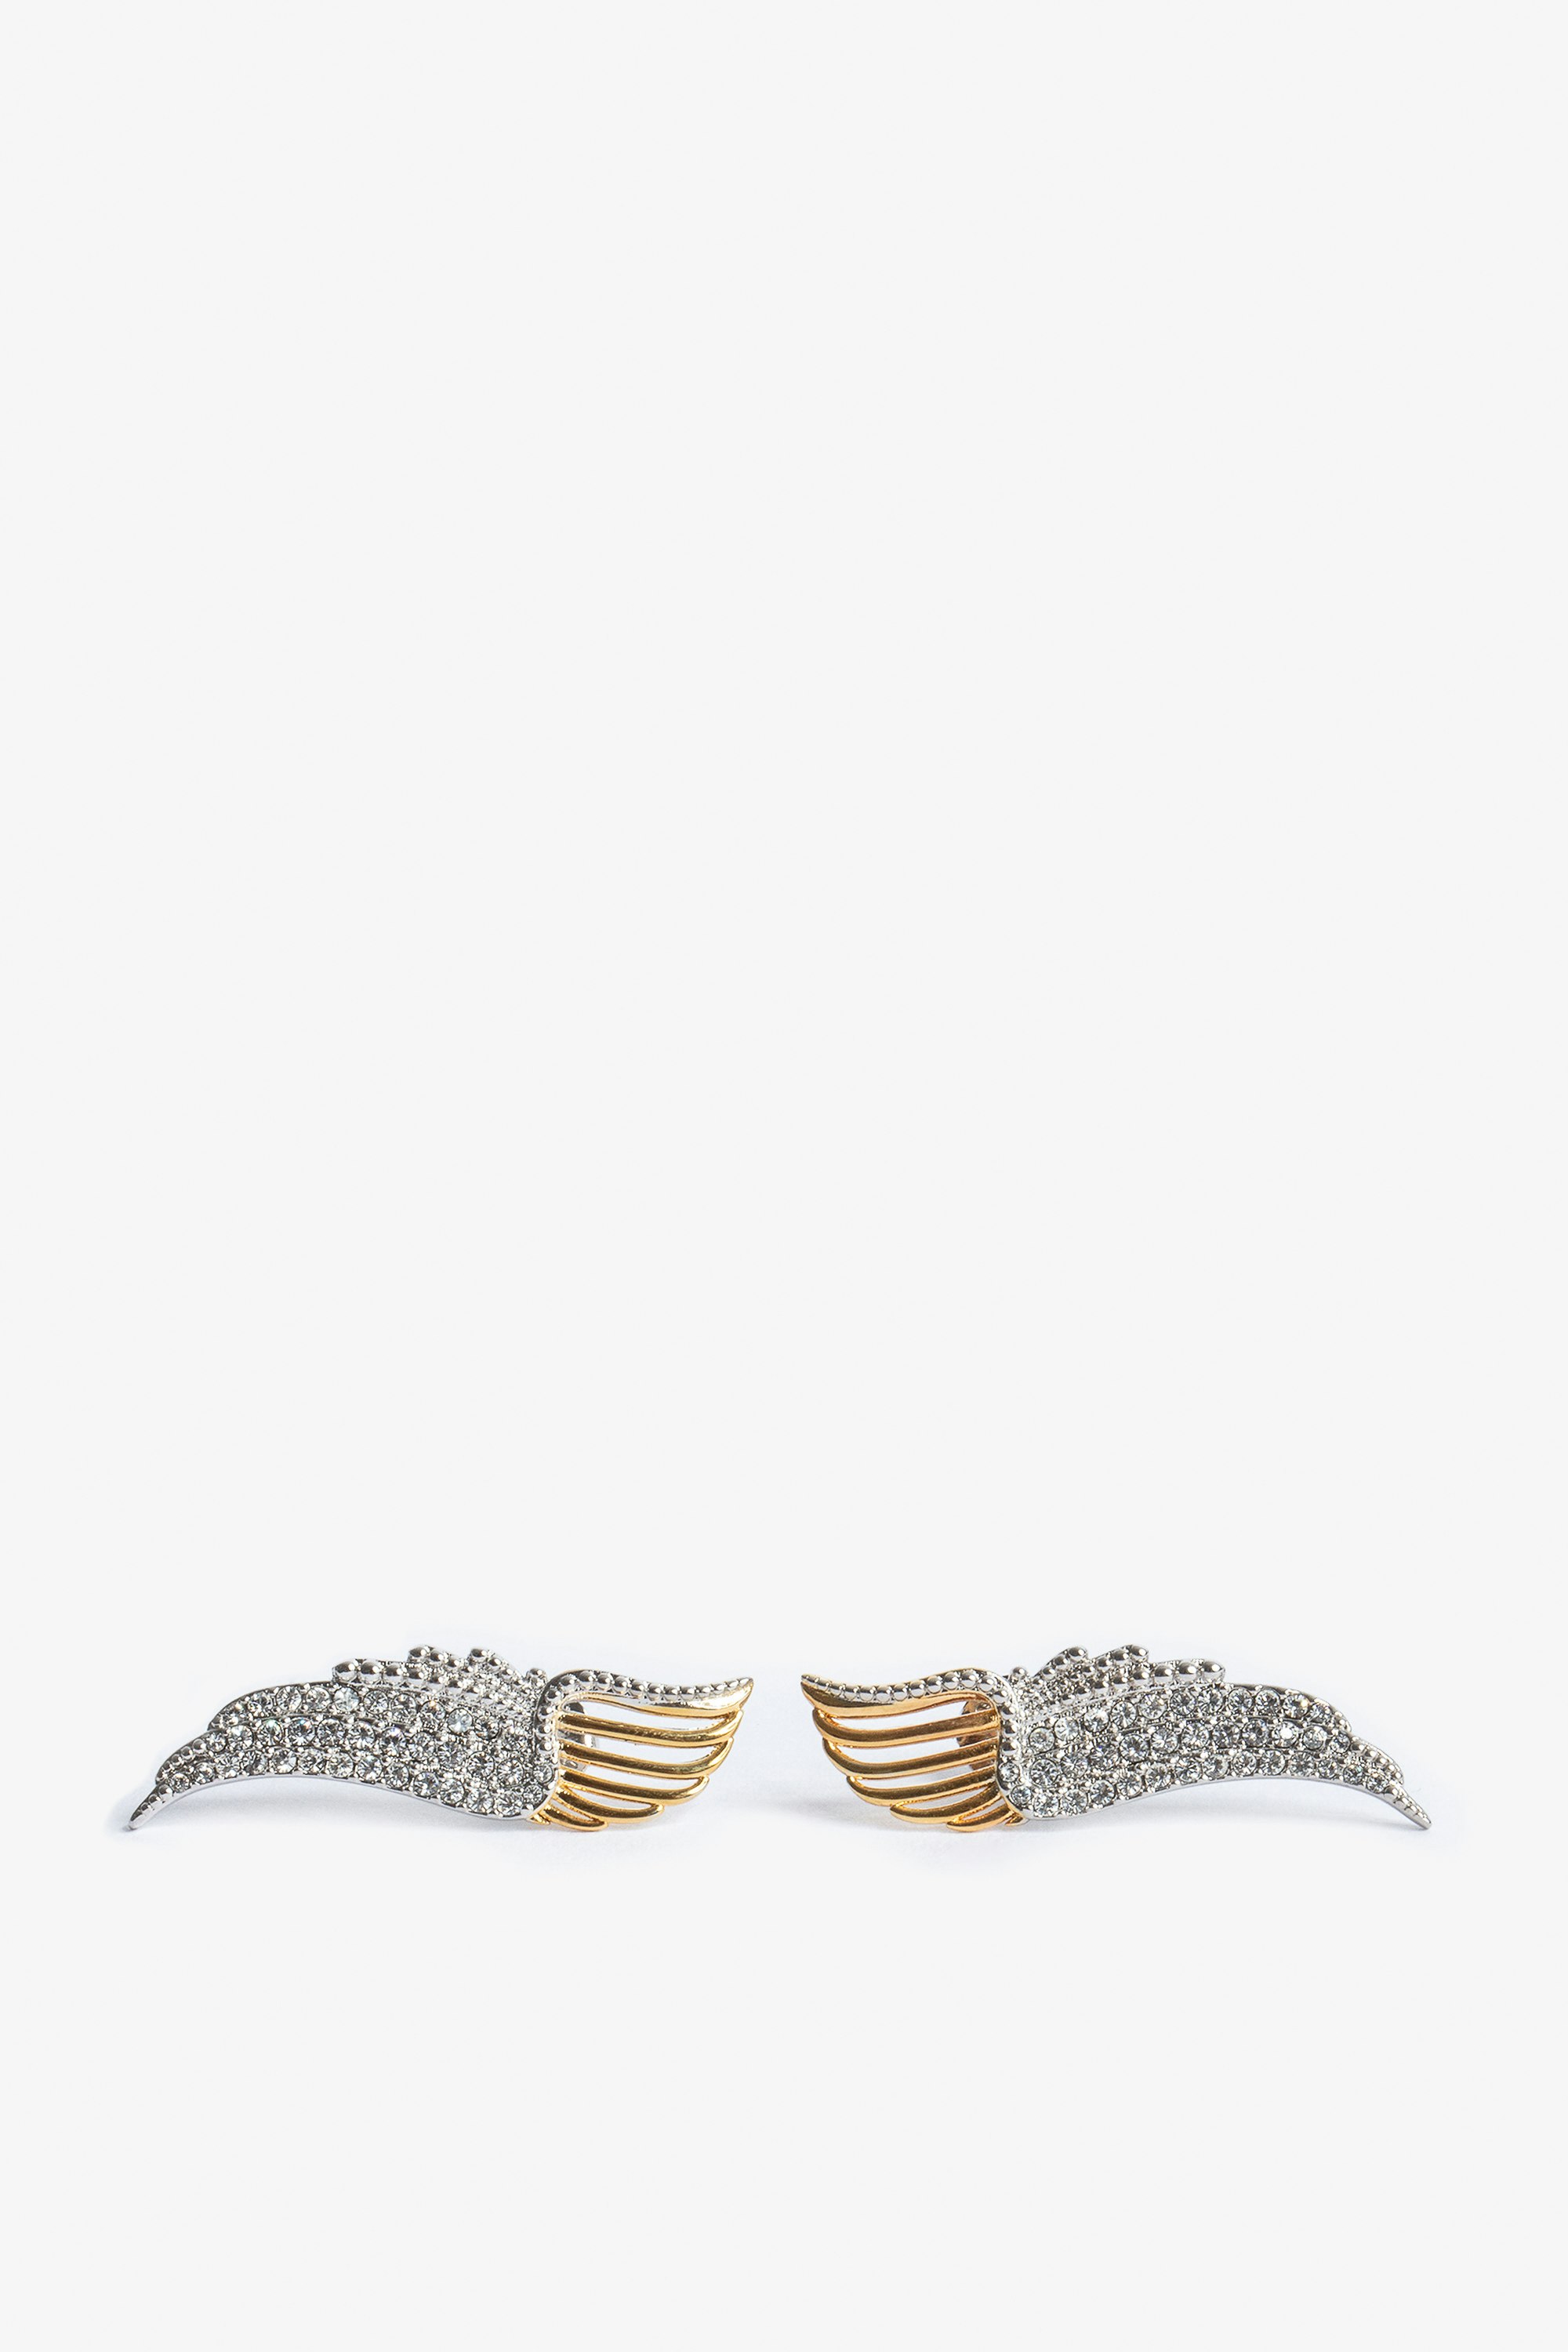 Rock Over Earrings - Crystal-embellished gold-tone metal wings earrings.